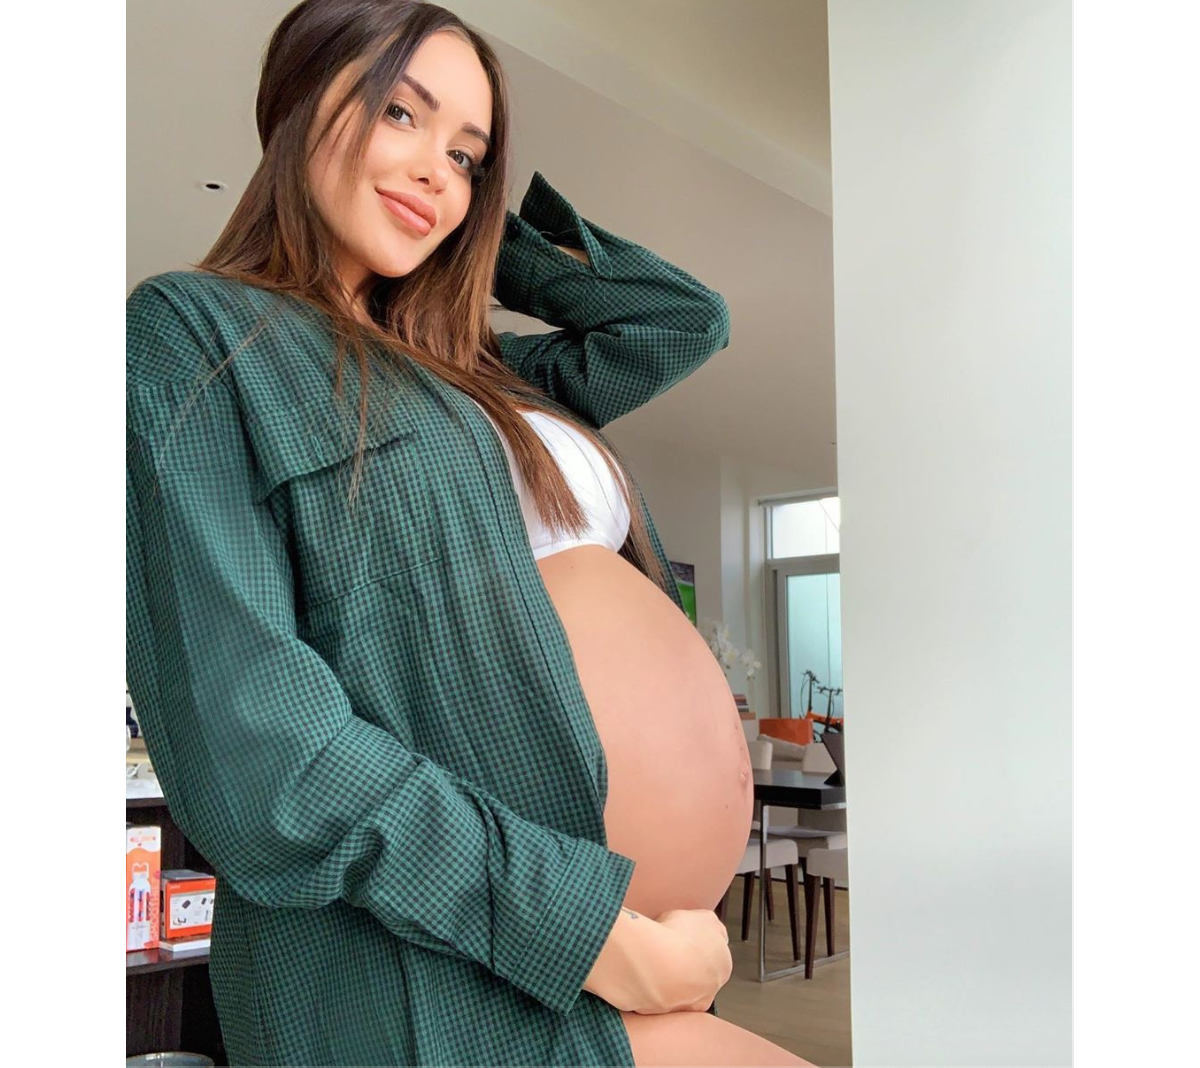 Photo : Enceinte de 30 semaines, Nabilla dévoile son baby bump le 17 août  2019. - Purepeople